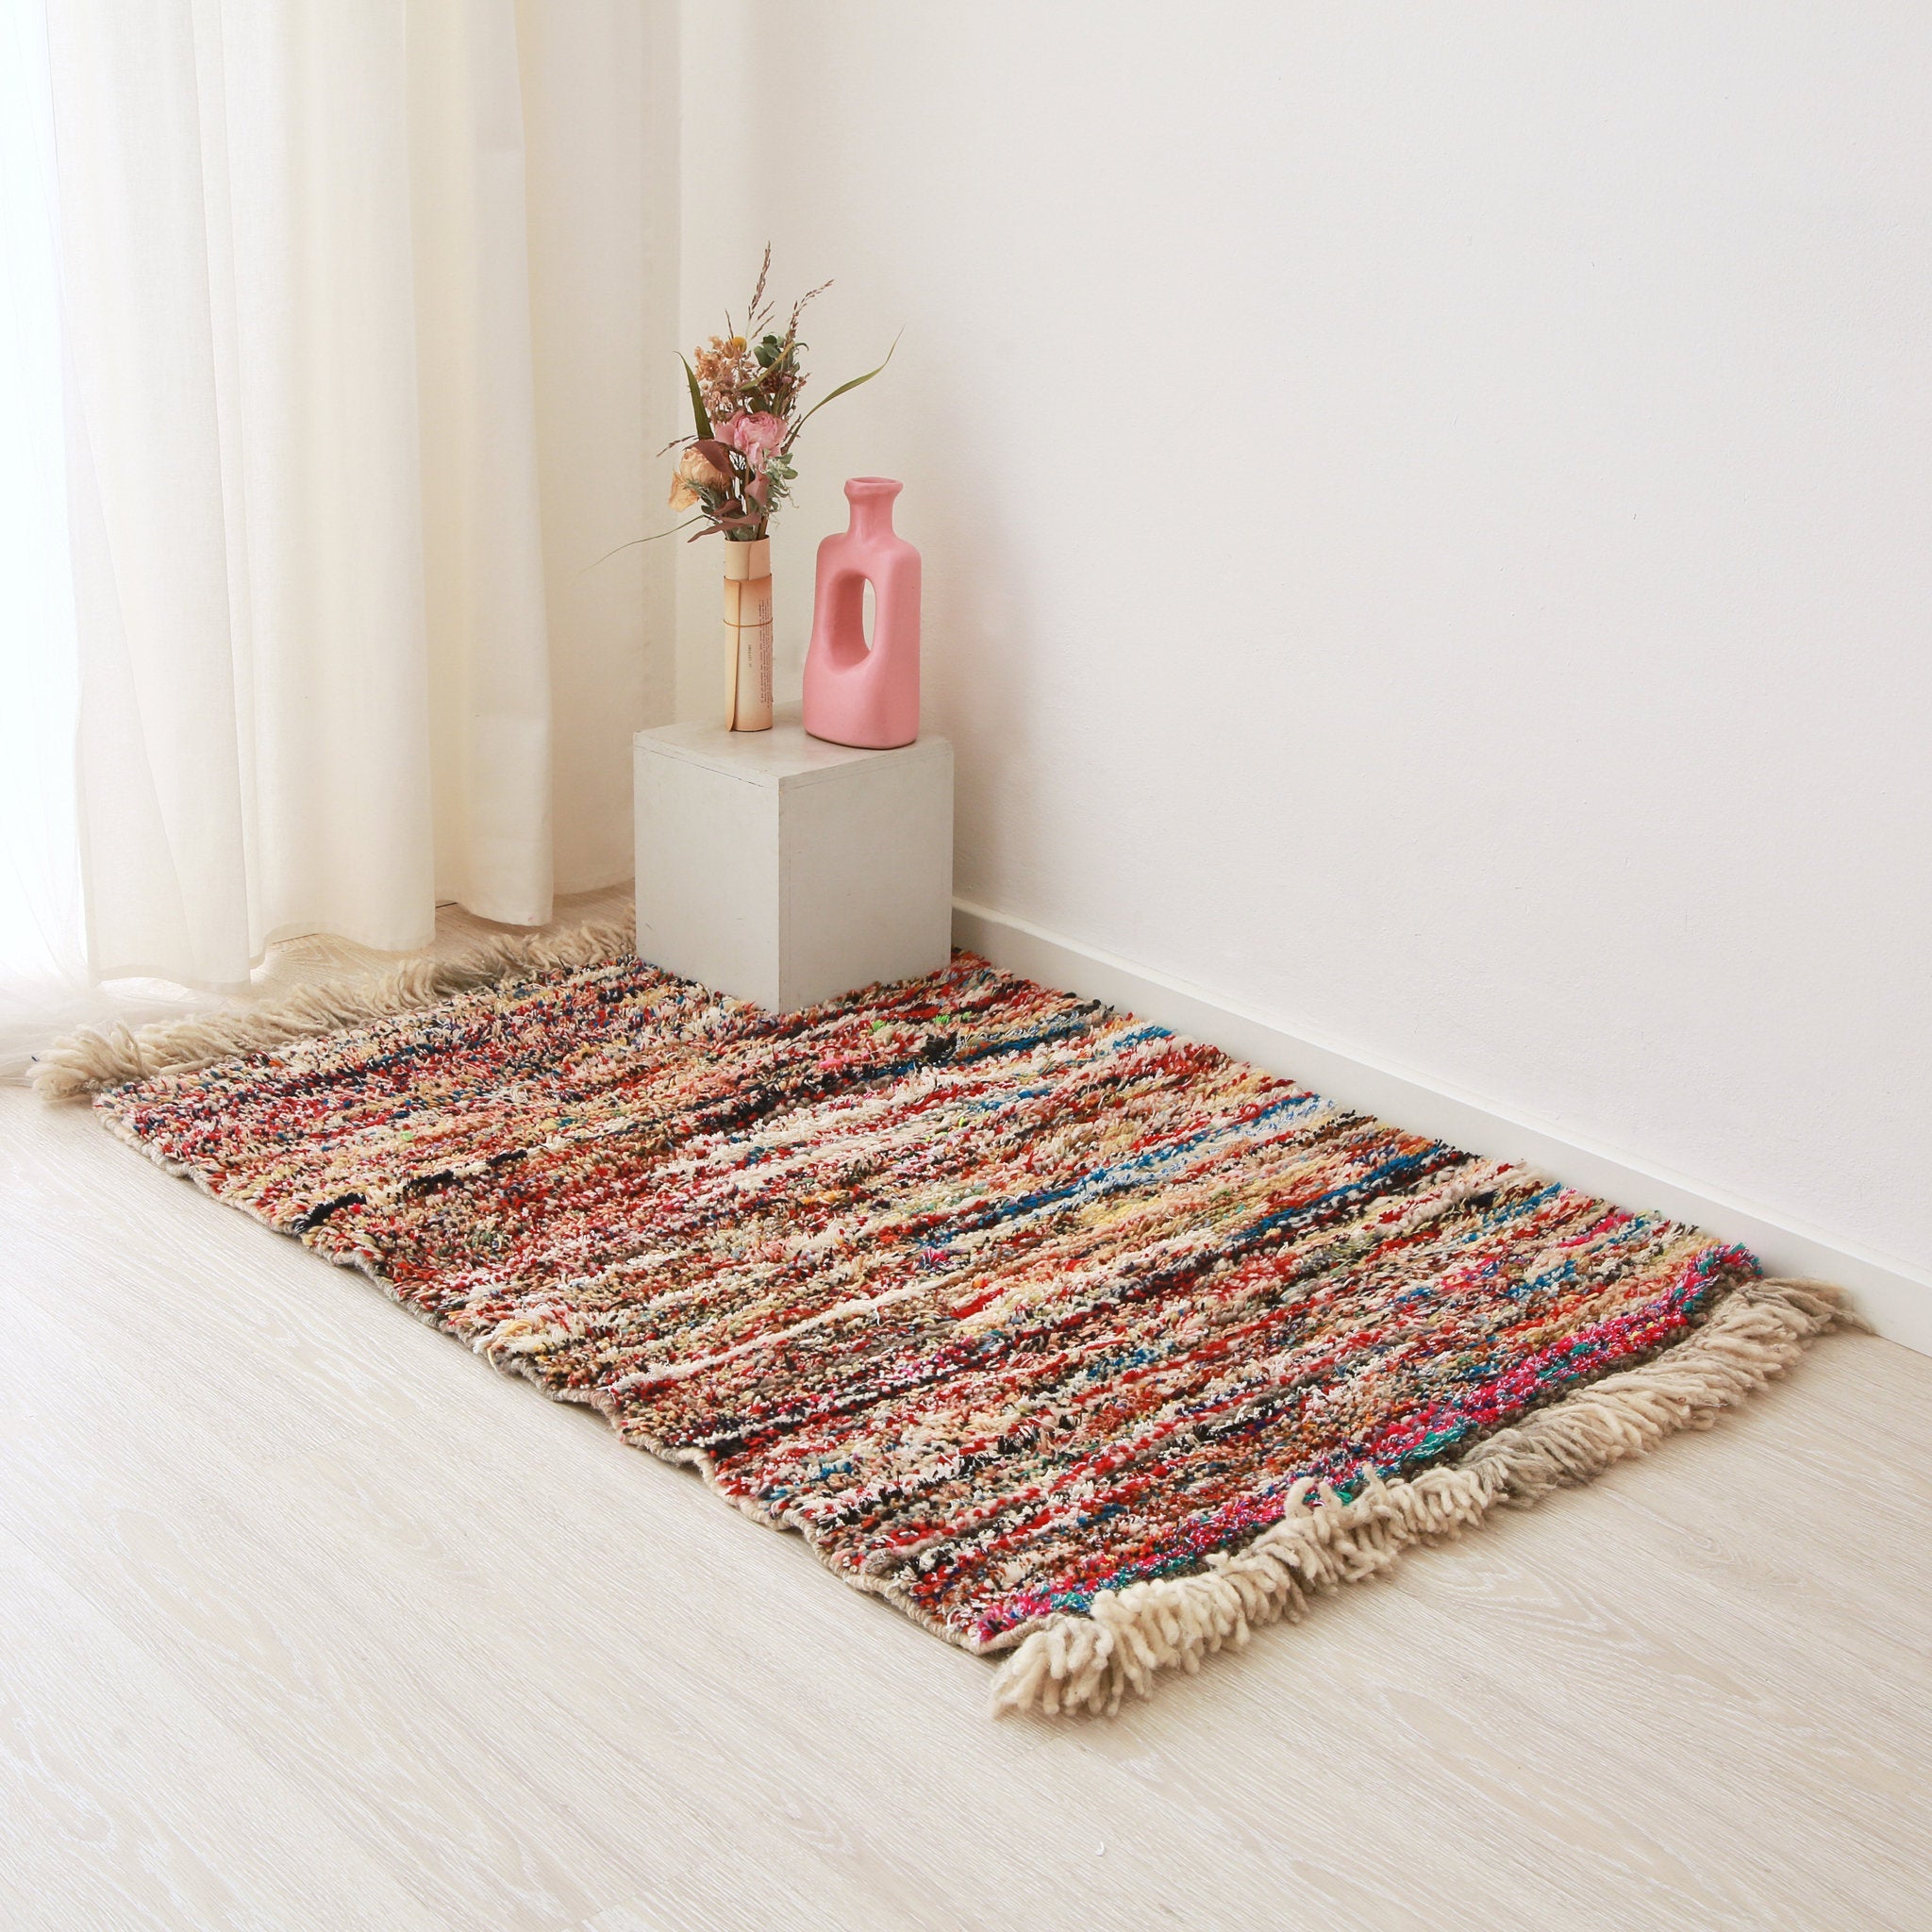 piccolo tappeto marocchino realizzato con resti di lana e filati colorati